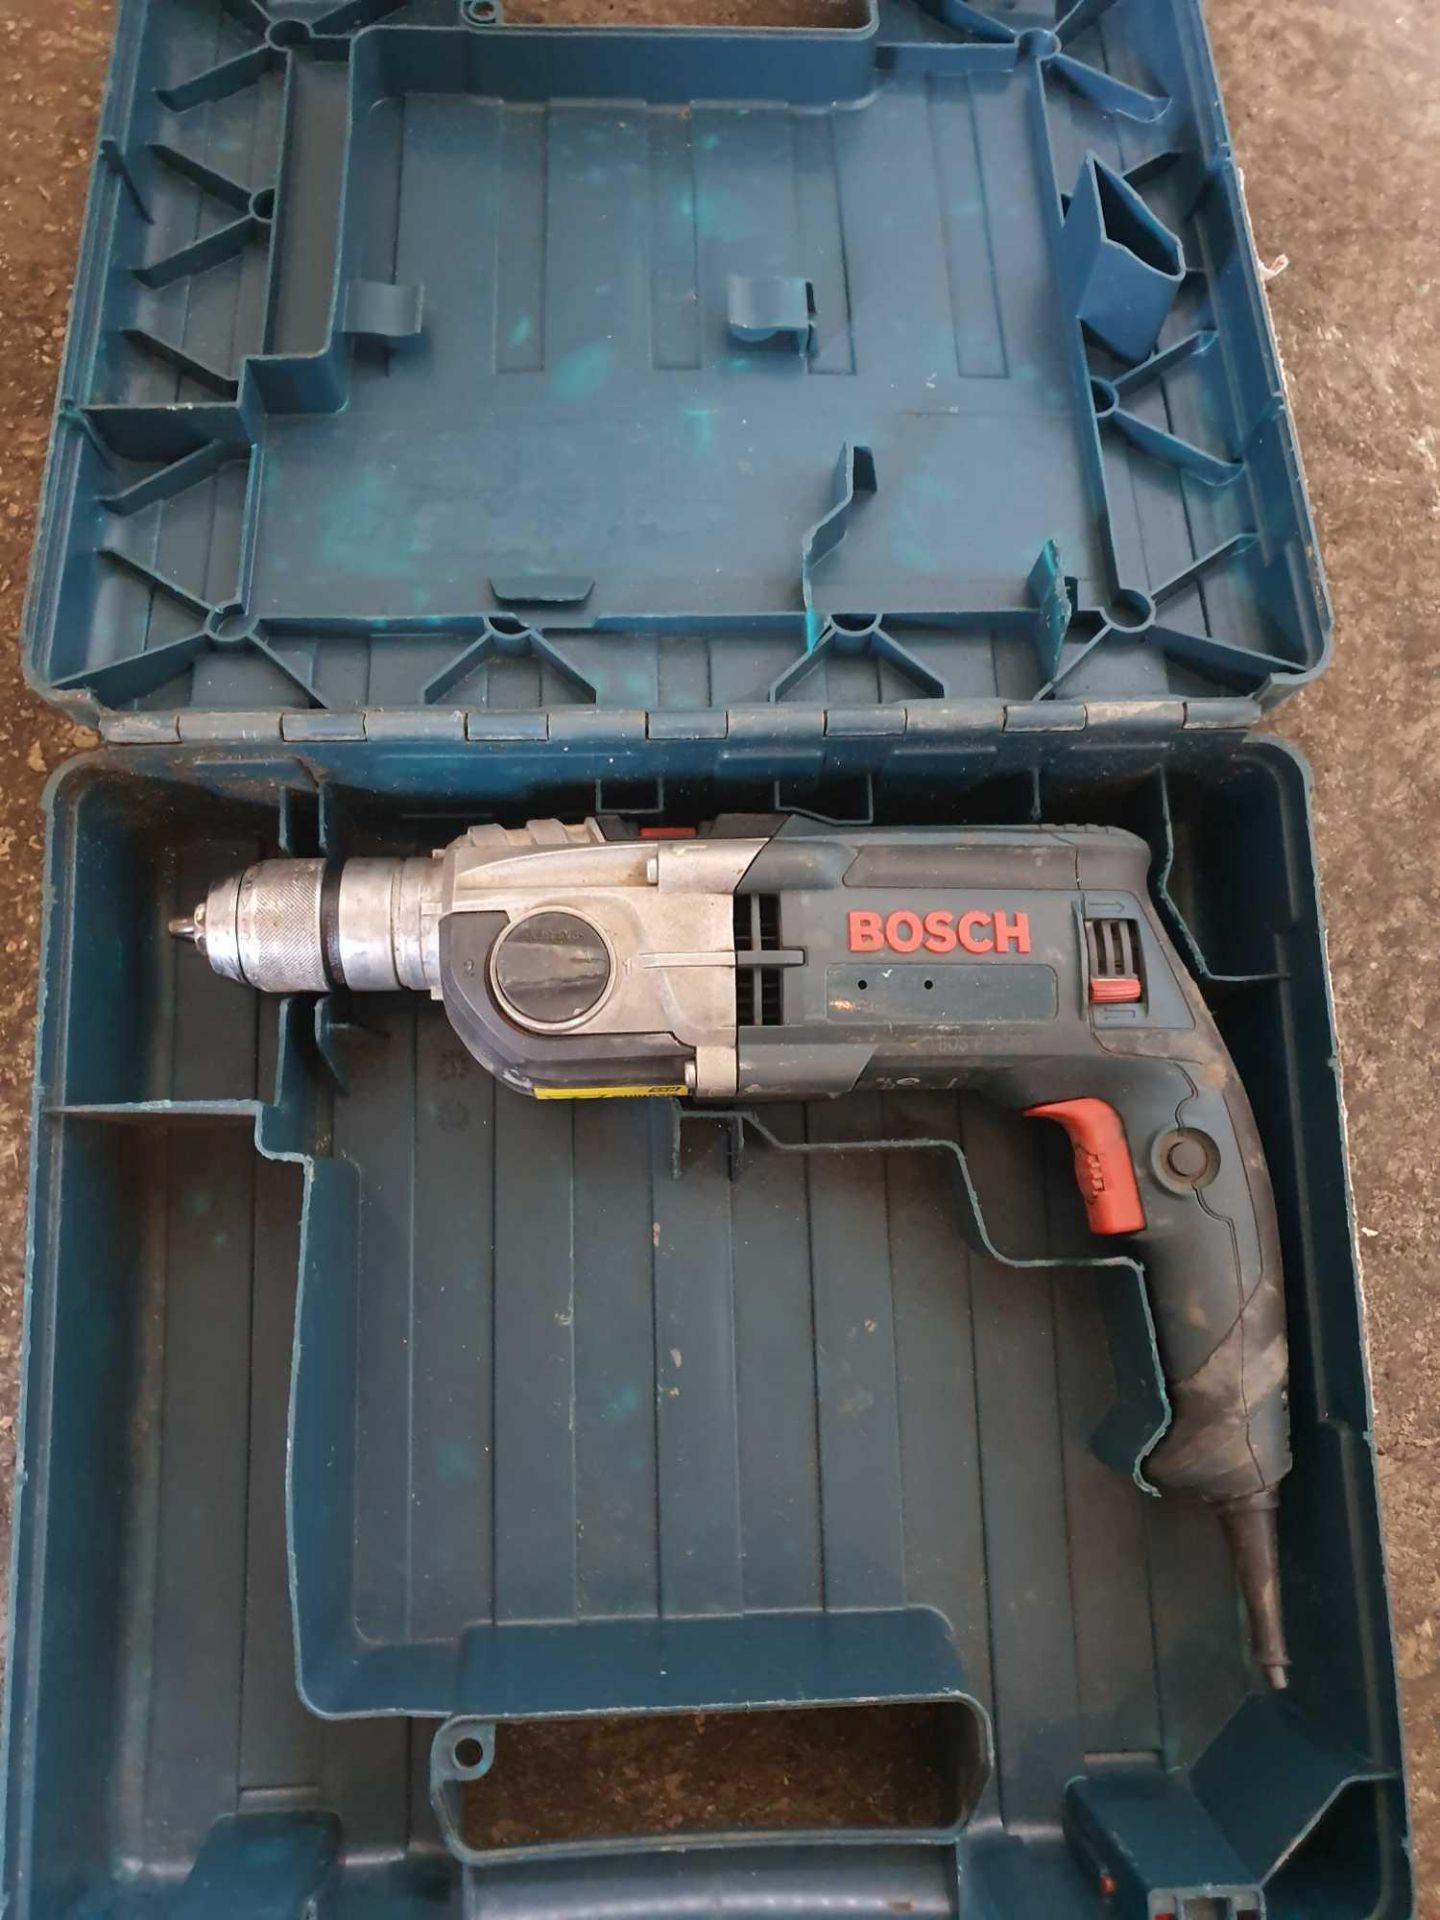 Bosch 110v drill - Image 2 of 2